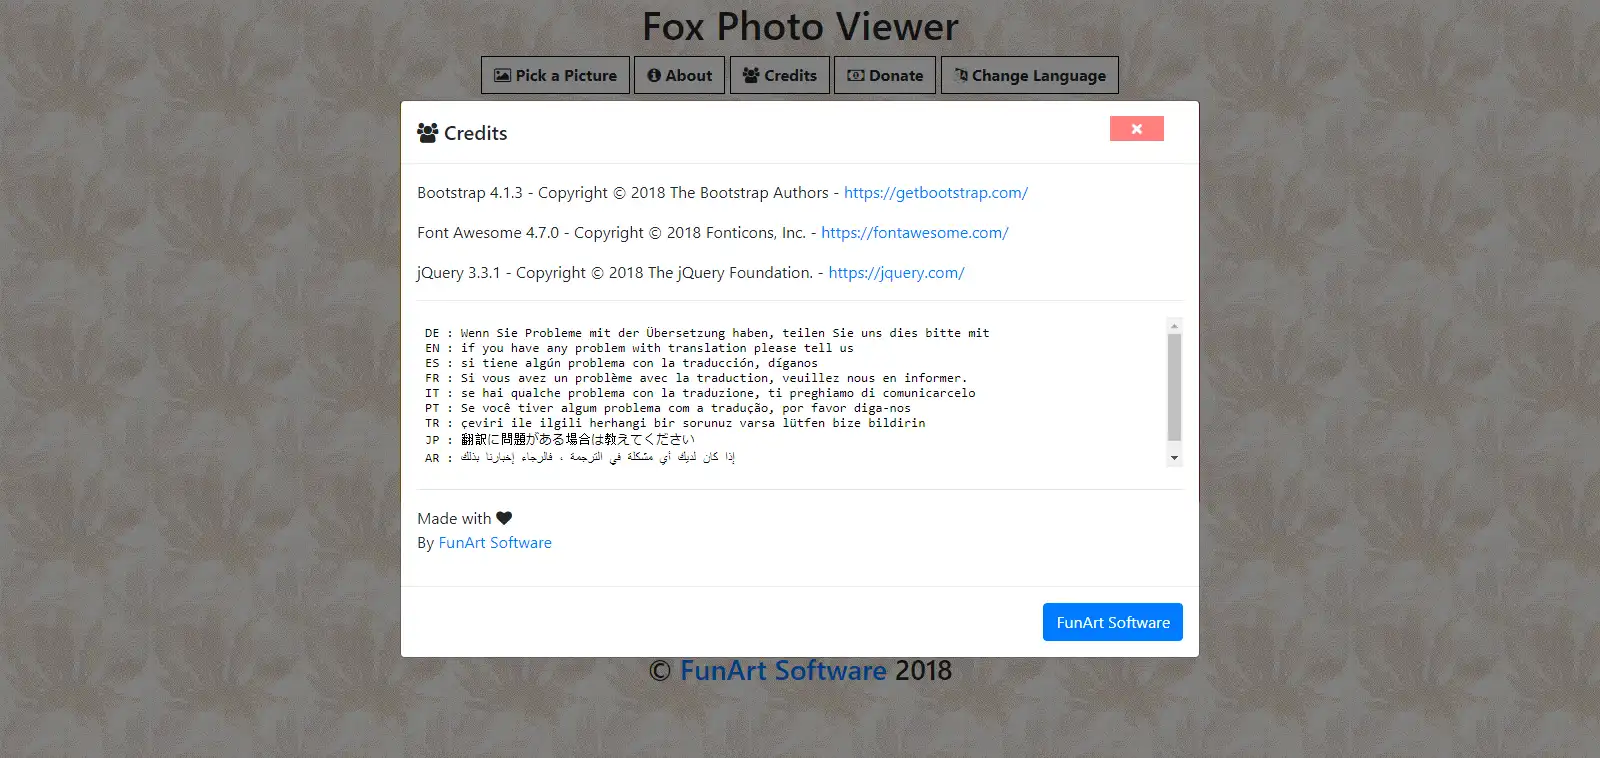 ابزار وب یا برنامه وب Fox Photo Viewer را دانلود کنید